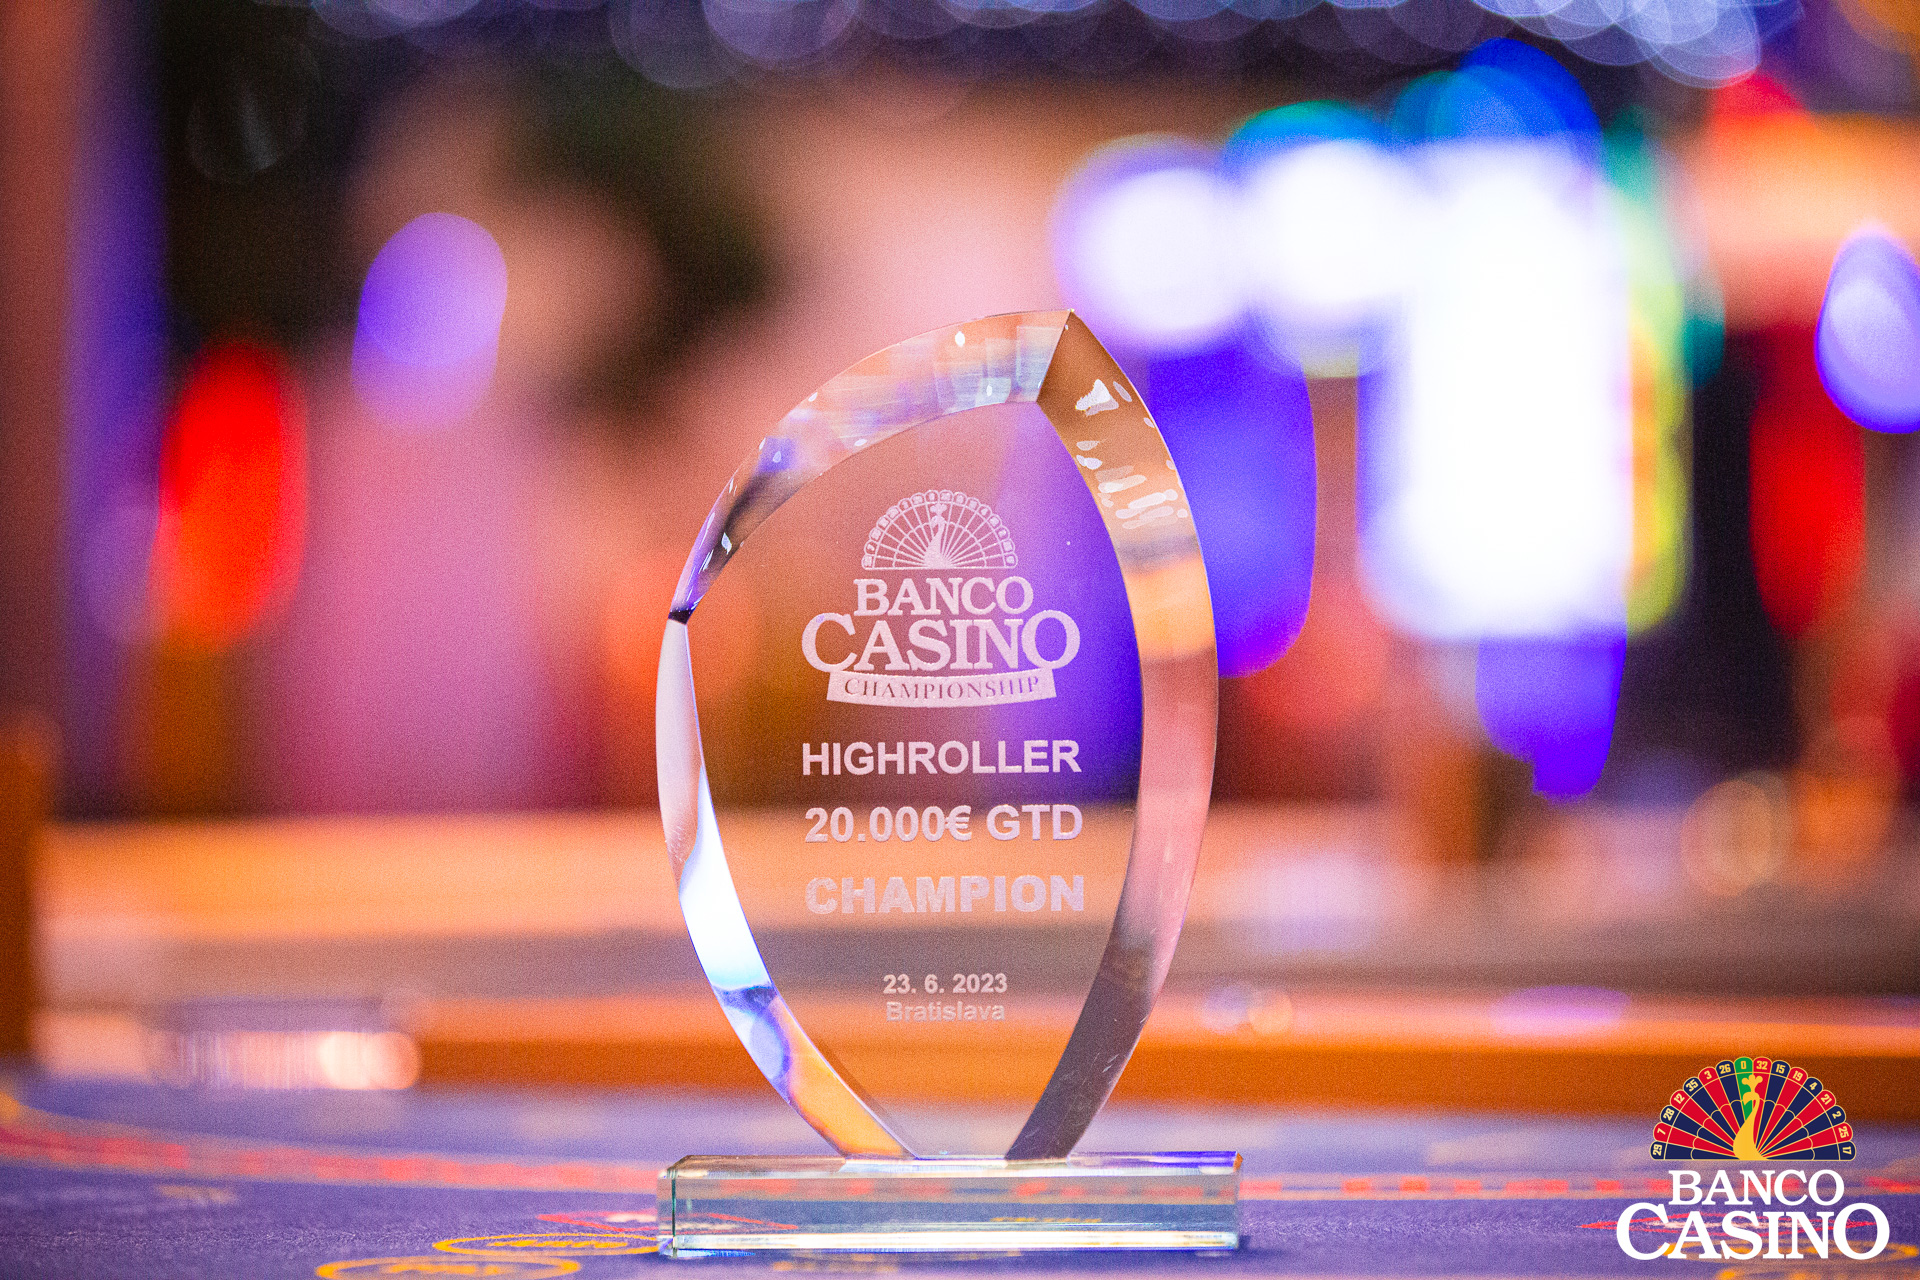 Banco Casino Championship € 150.000 GTD: Nach drei Eröffnungstagen sind nur 29 Spieler am Finaltag dabei!